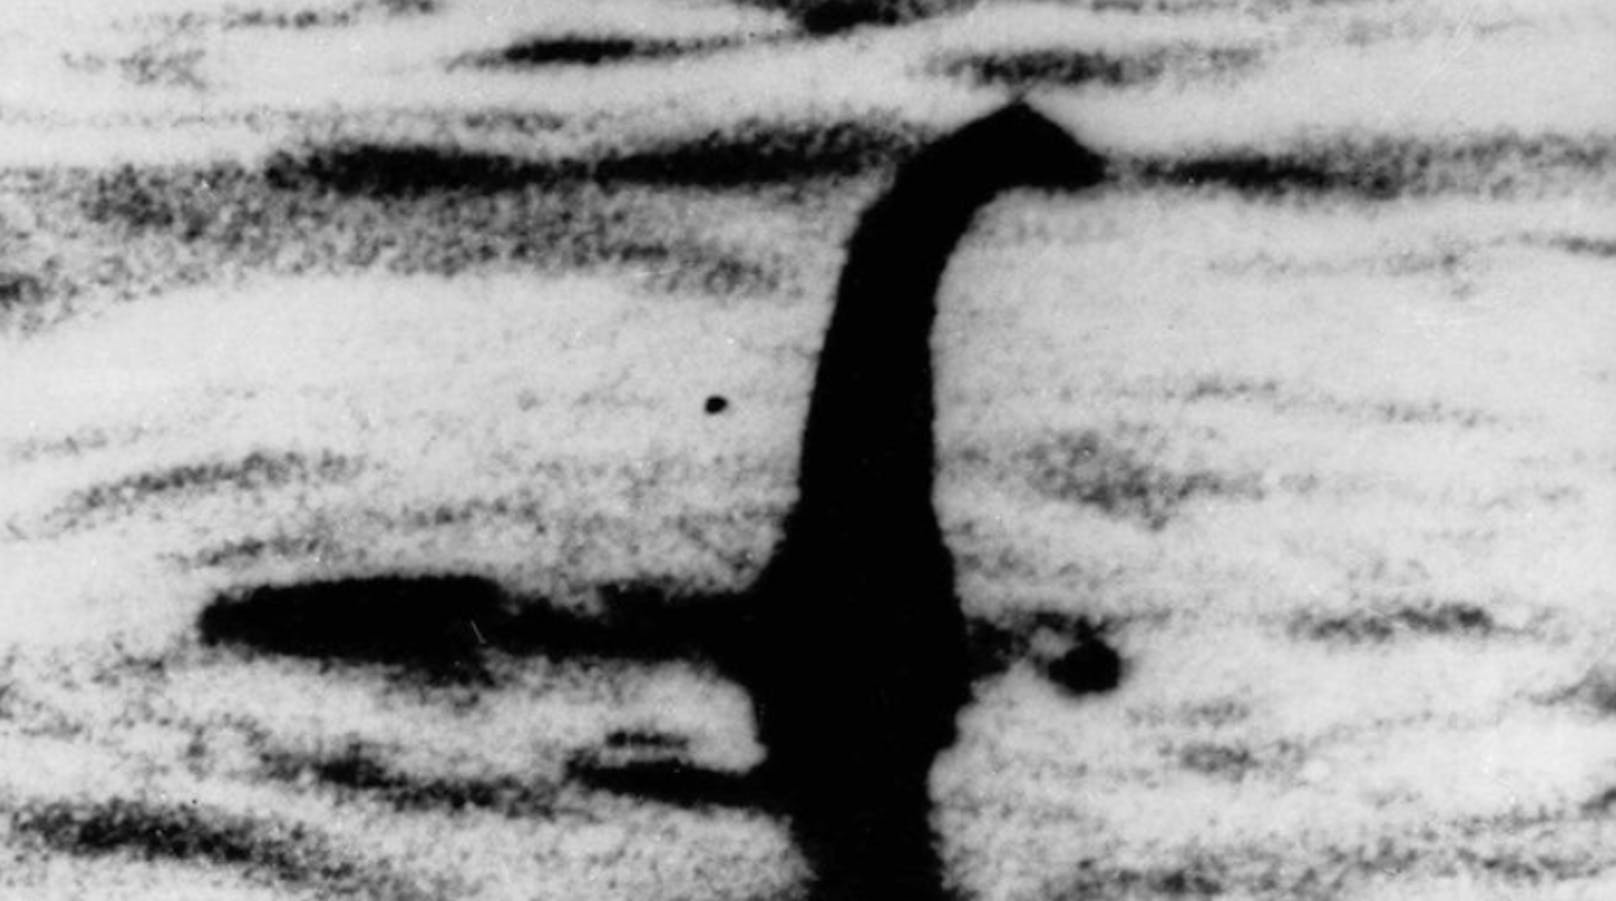 Selbstgebasteltes Monster auf einem Spielzeug-U-Boot: Diese Aufnahme erreichte Berühmtheit, wurde später aber ebenfalls als Fälschung enttarnt. 